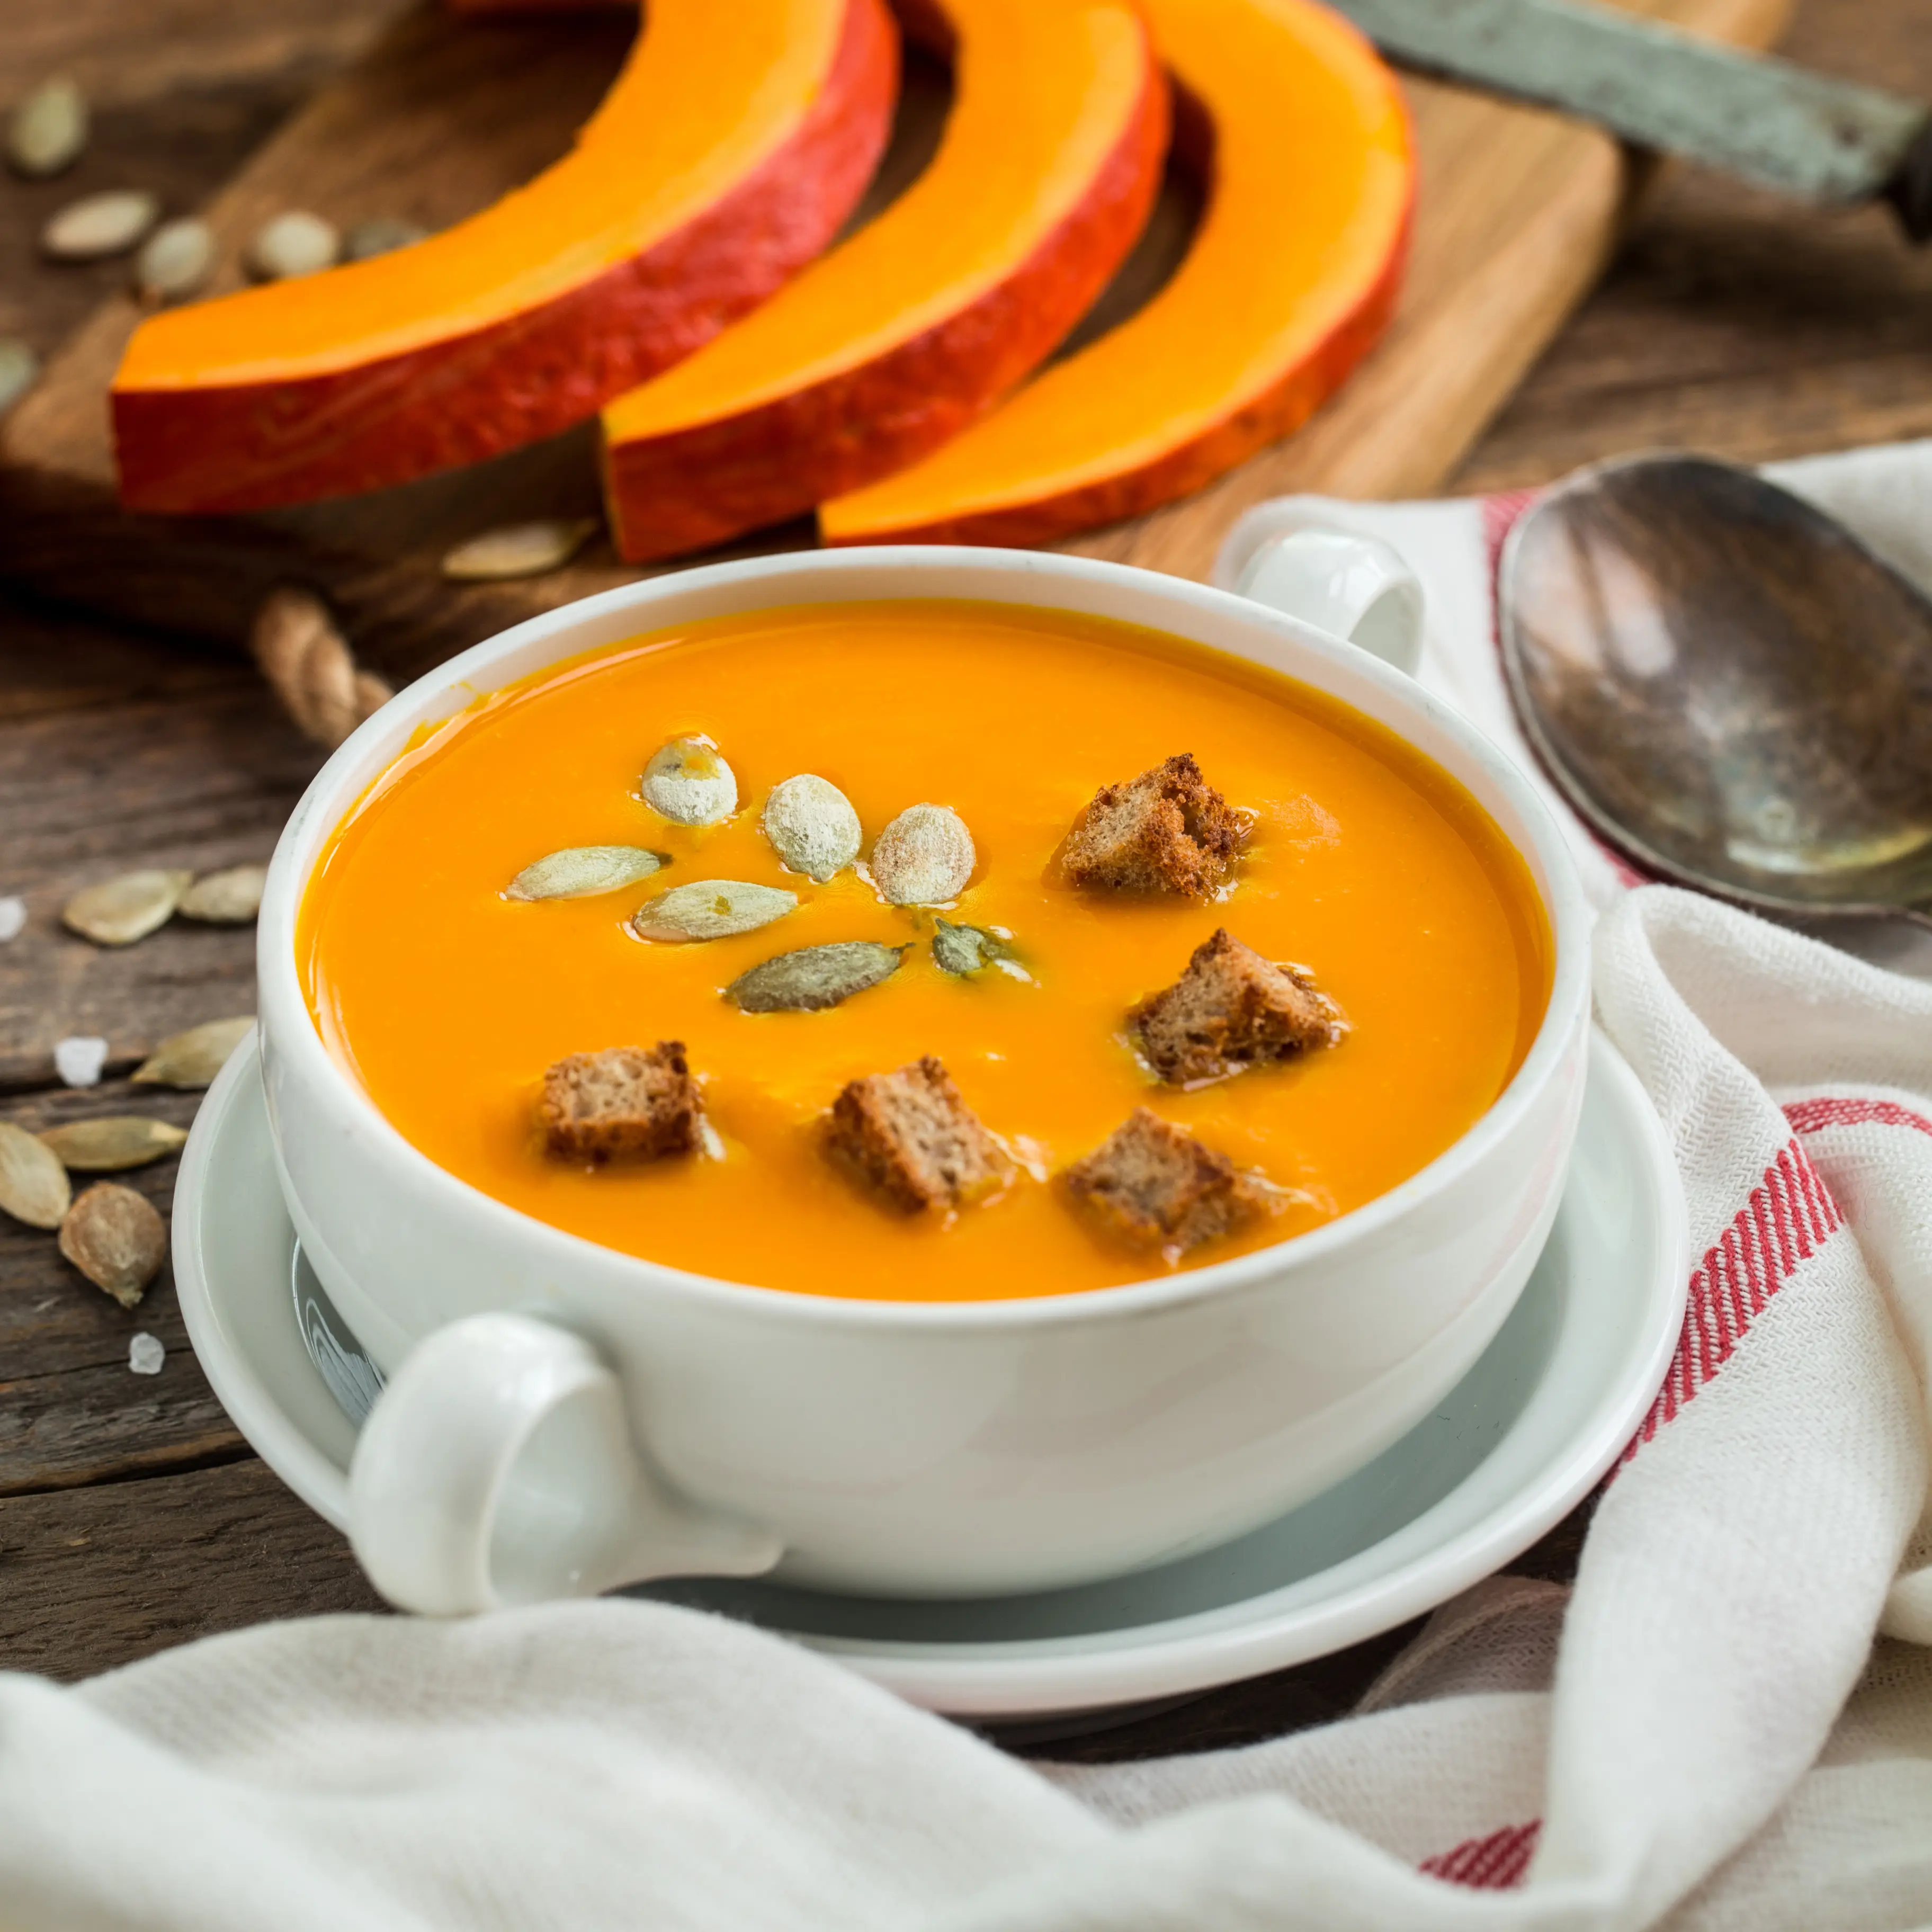 Pumpkin, curry and leeks soup